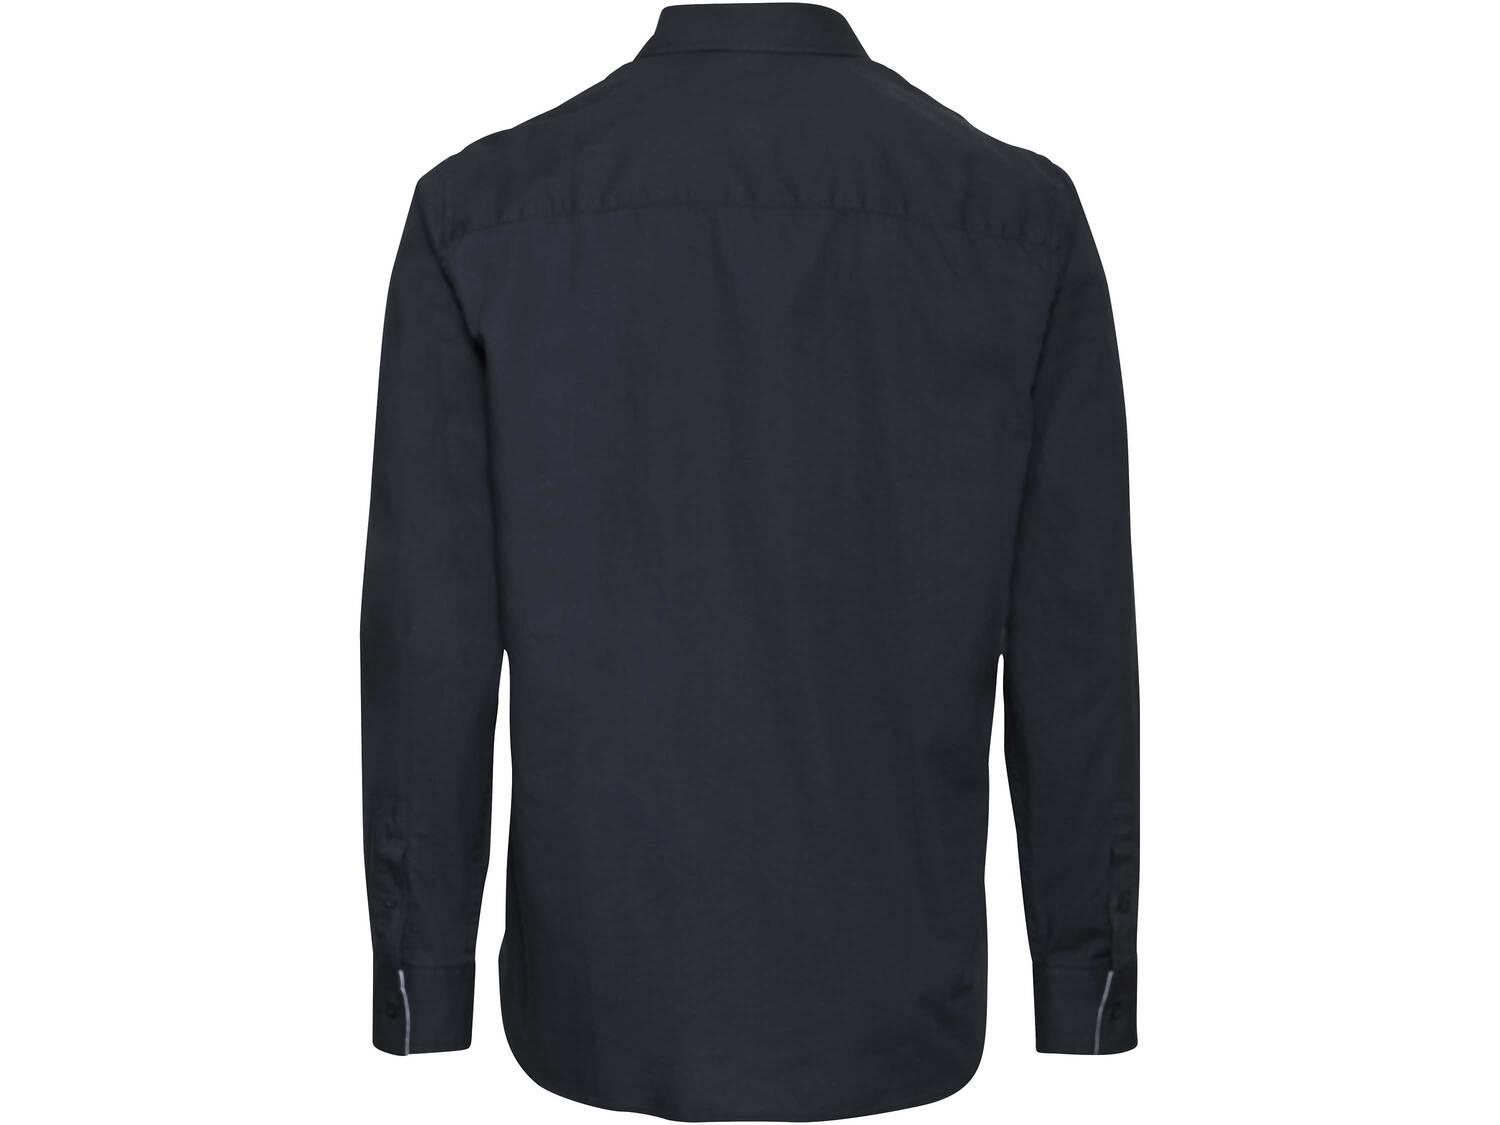 Koszula męska z bawełny Livergy, cena 34,99 PLN 
- rozmiary: M-XL
- 100% bawełny
- ...